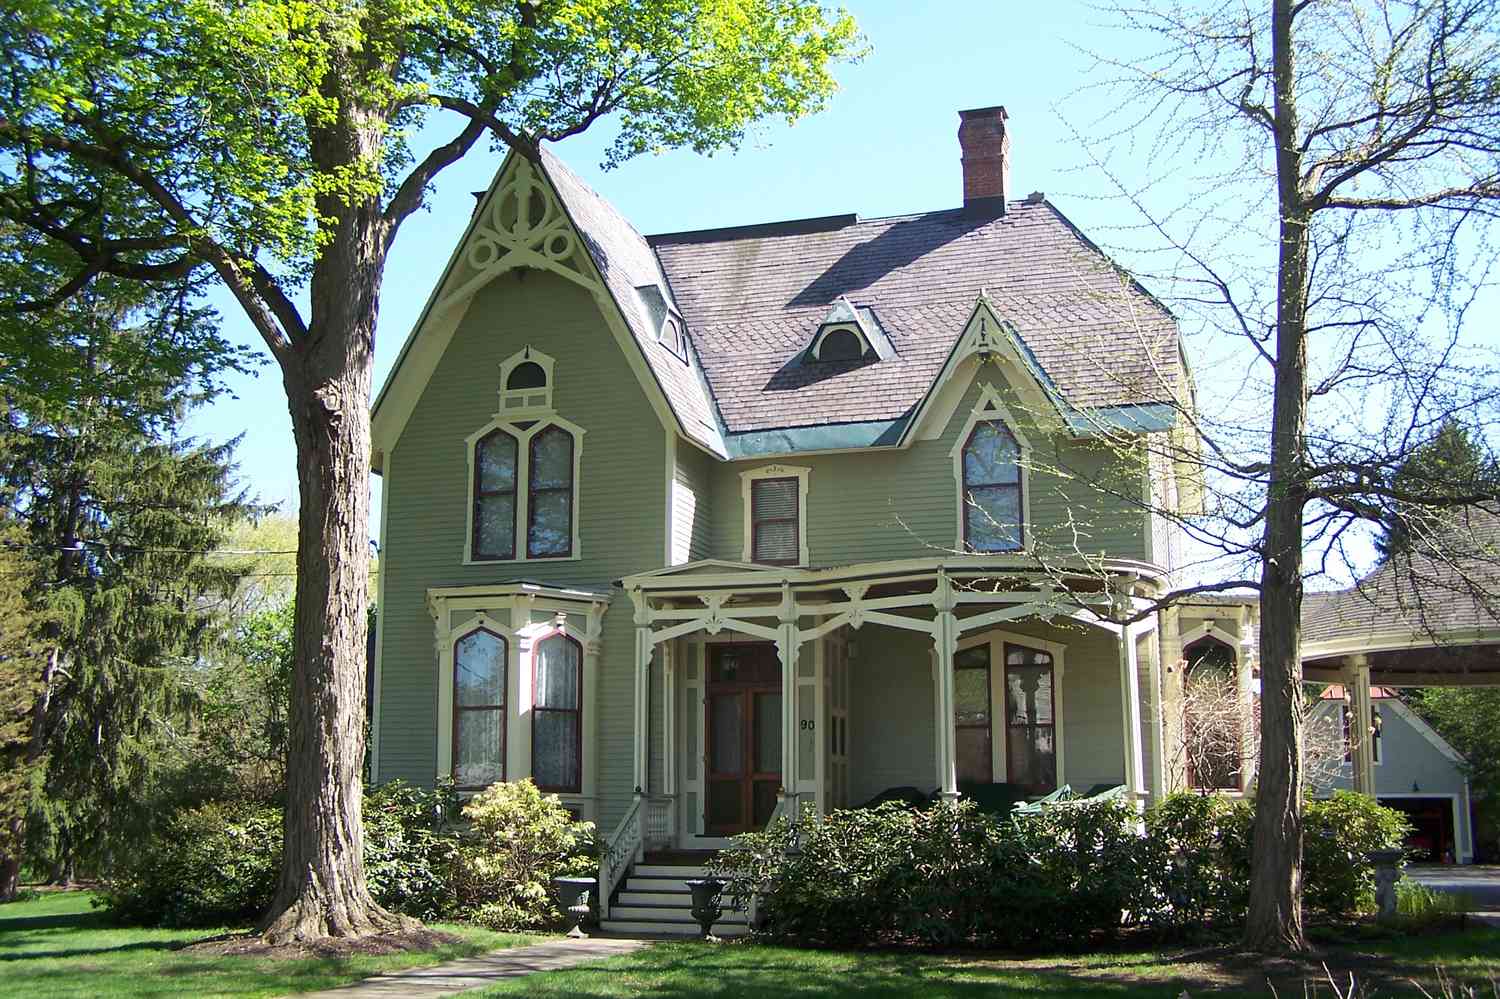 Casa victoriana de dos plantas, revestimiento verde con ribetes crema y rojo, tejado empinado con frontones y remates de bargeboard